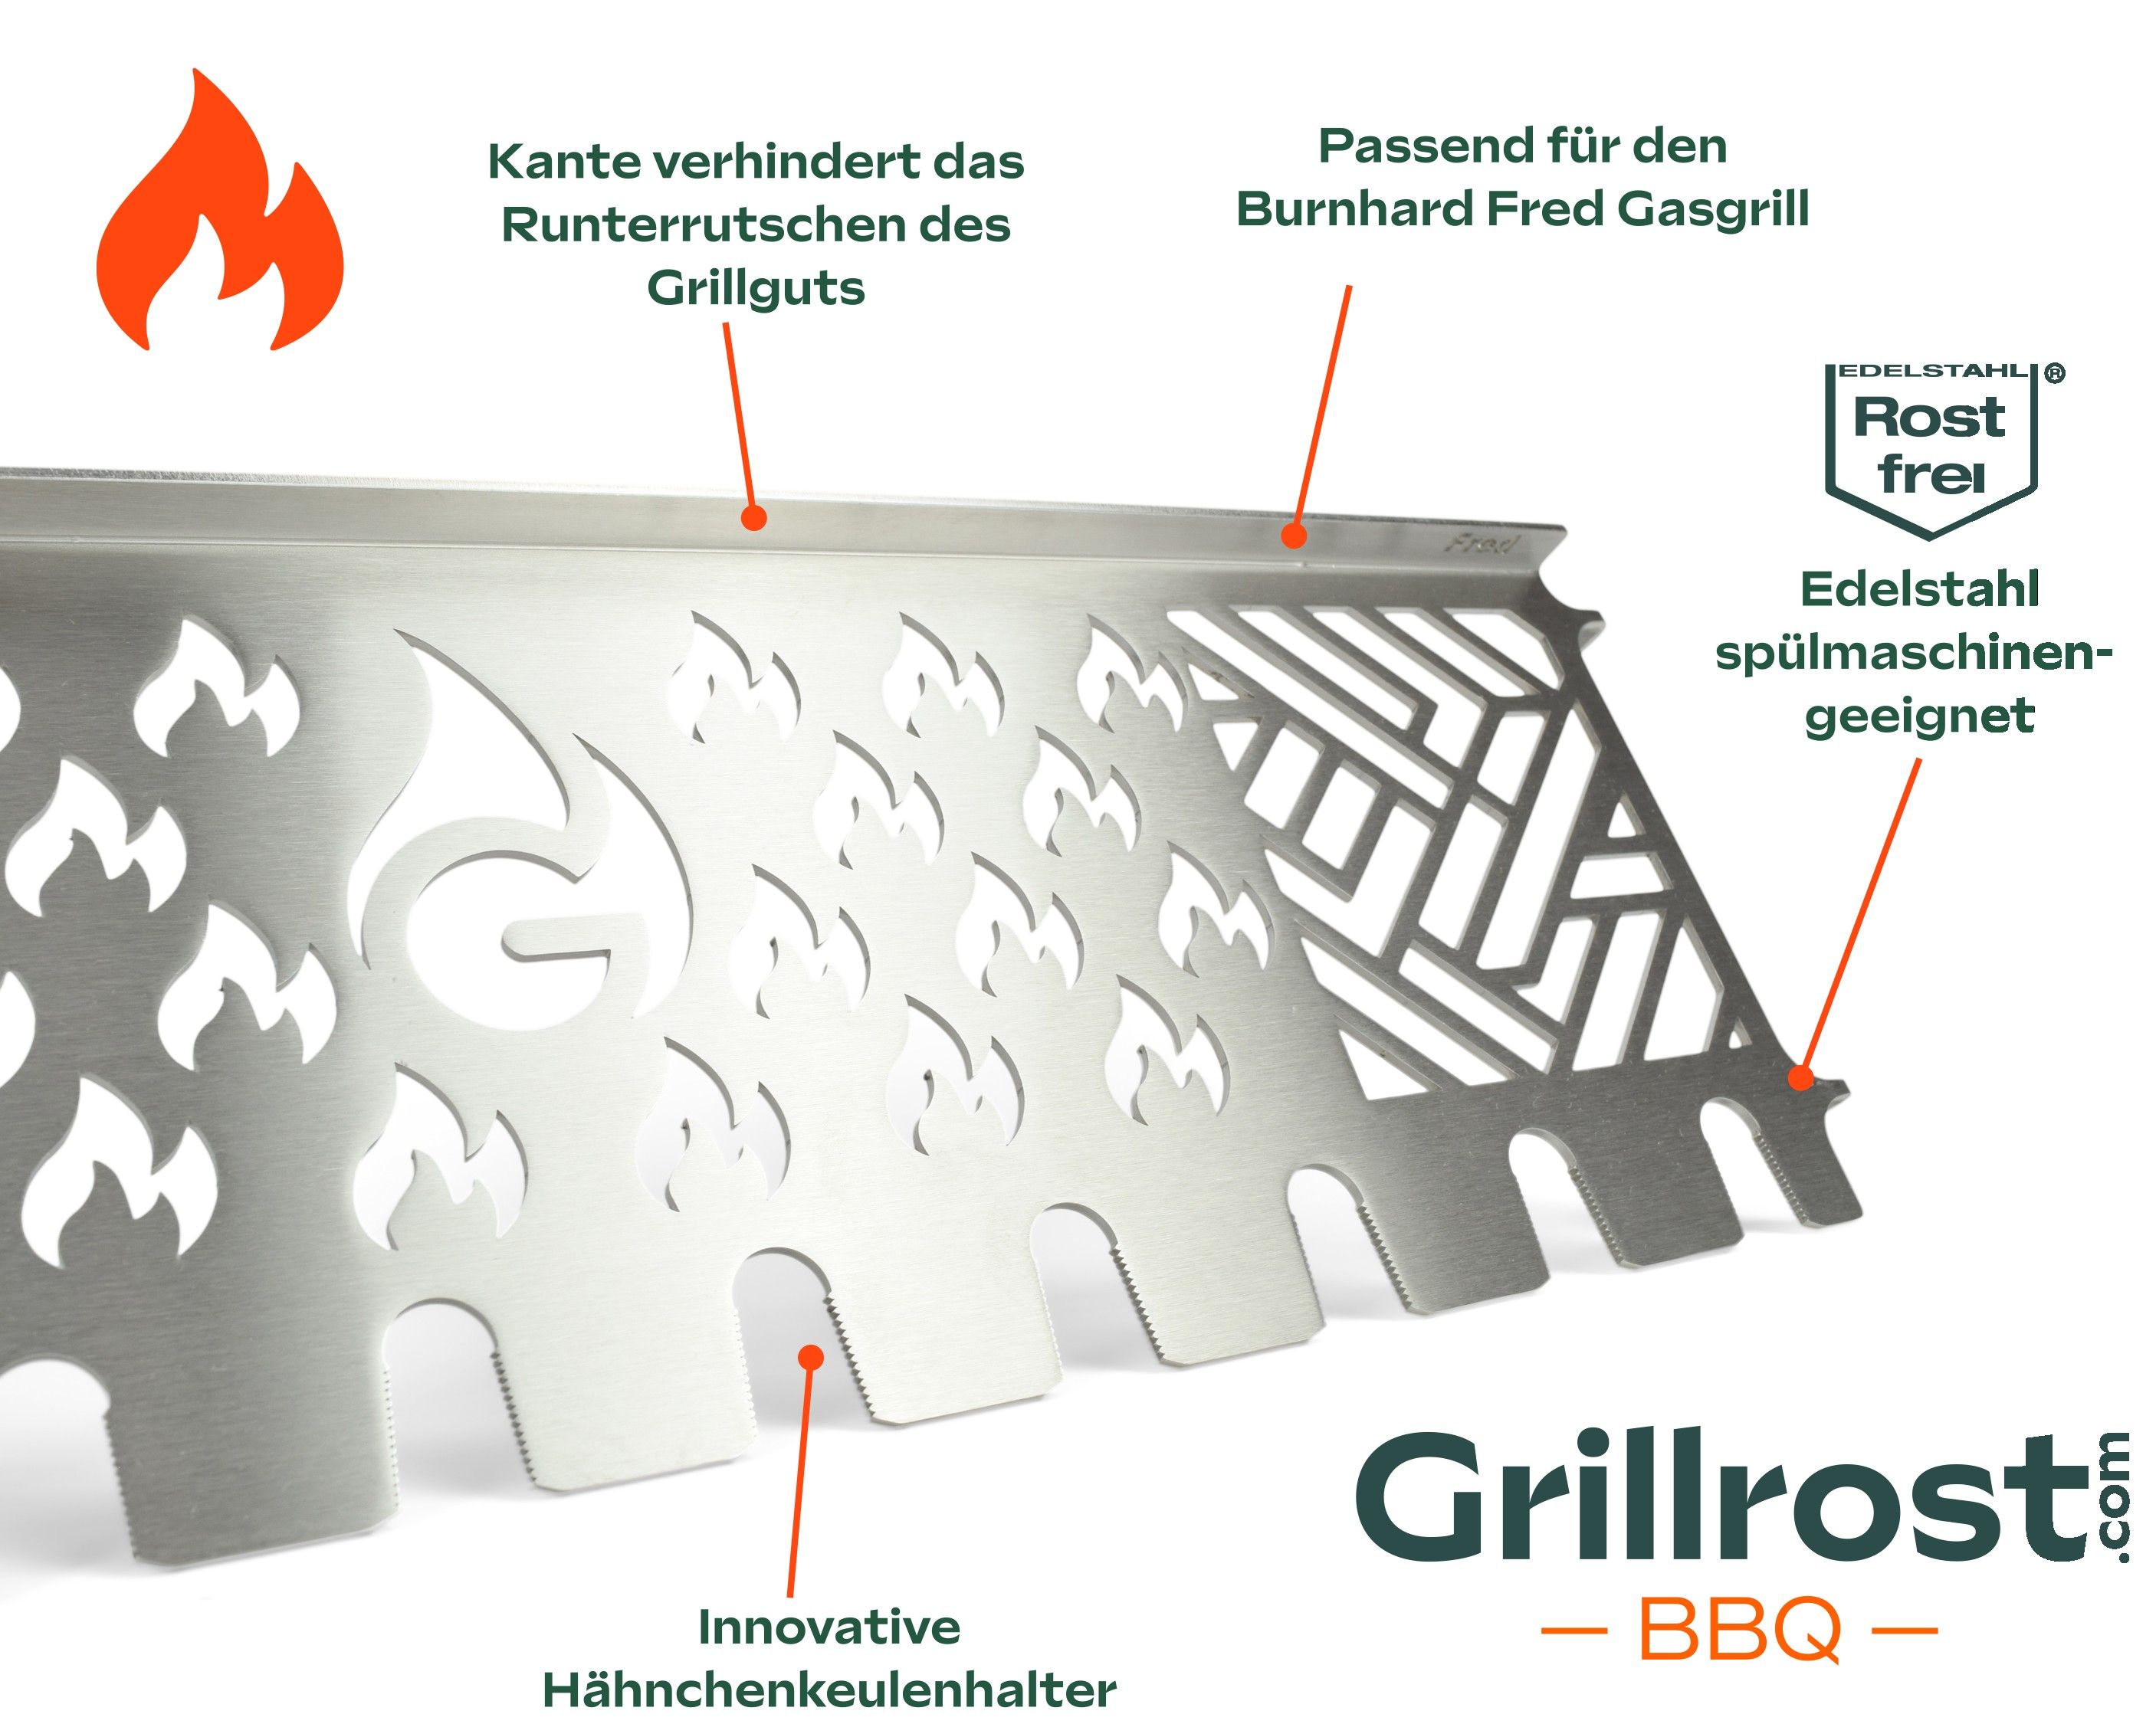 MultiStation en acier inoxydable pour Burnhard Fred - Grille de maintien au chaud